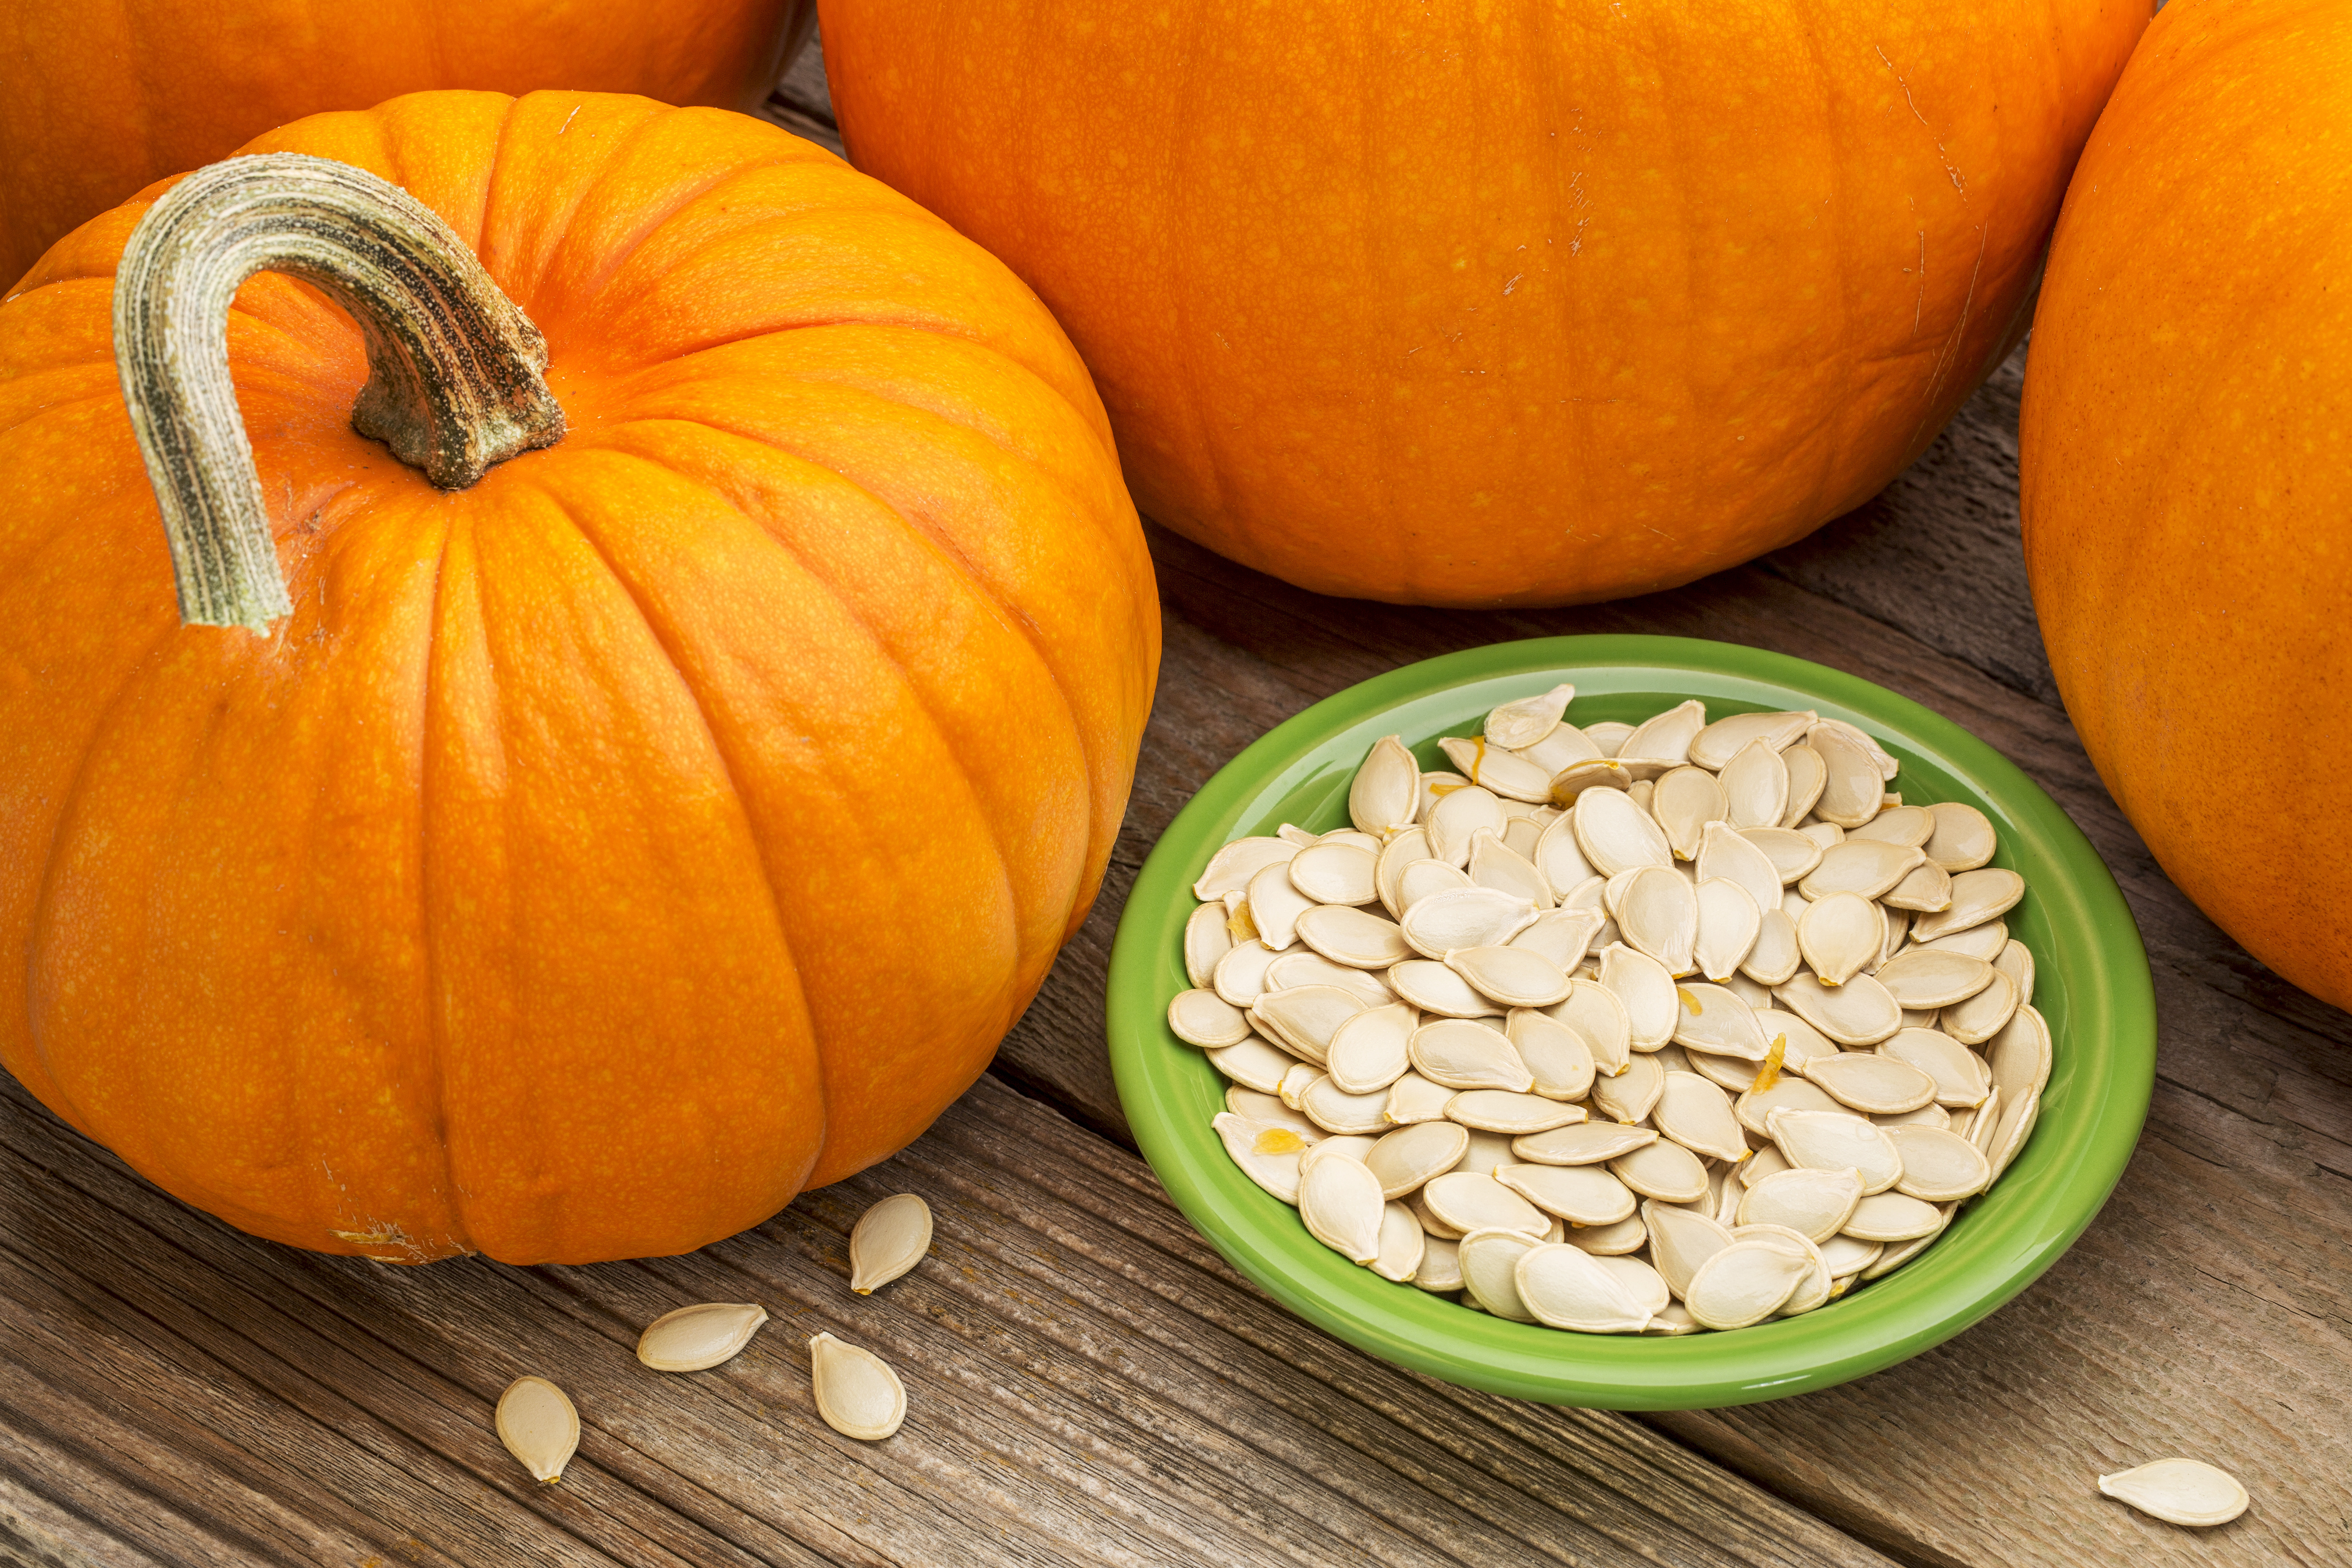 Bowl of pumpkin seeds with pumpkins